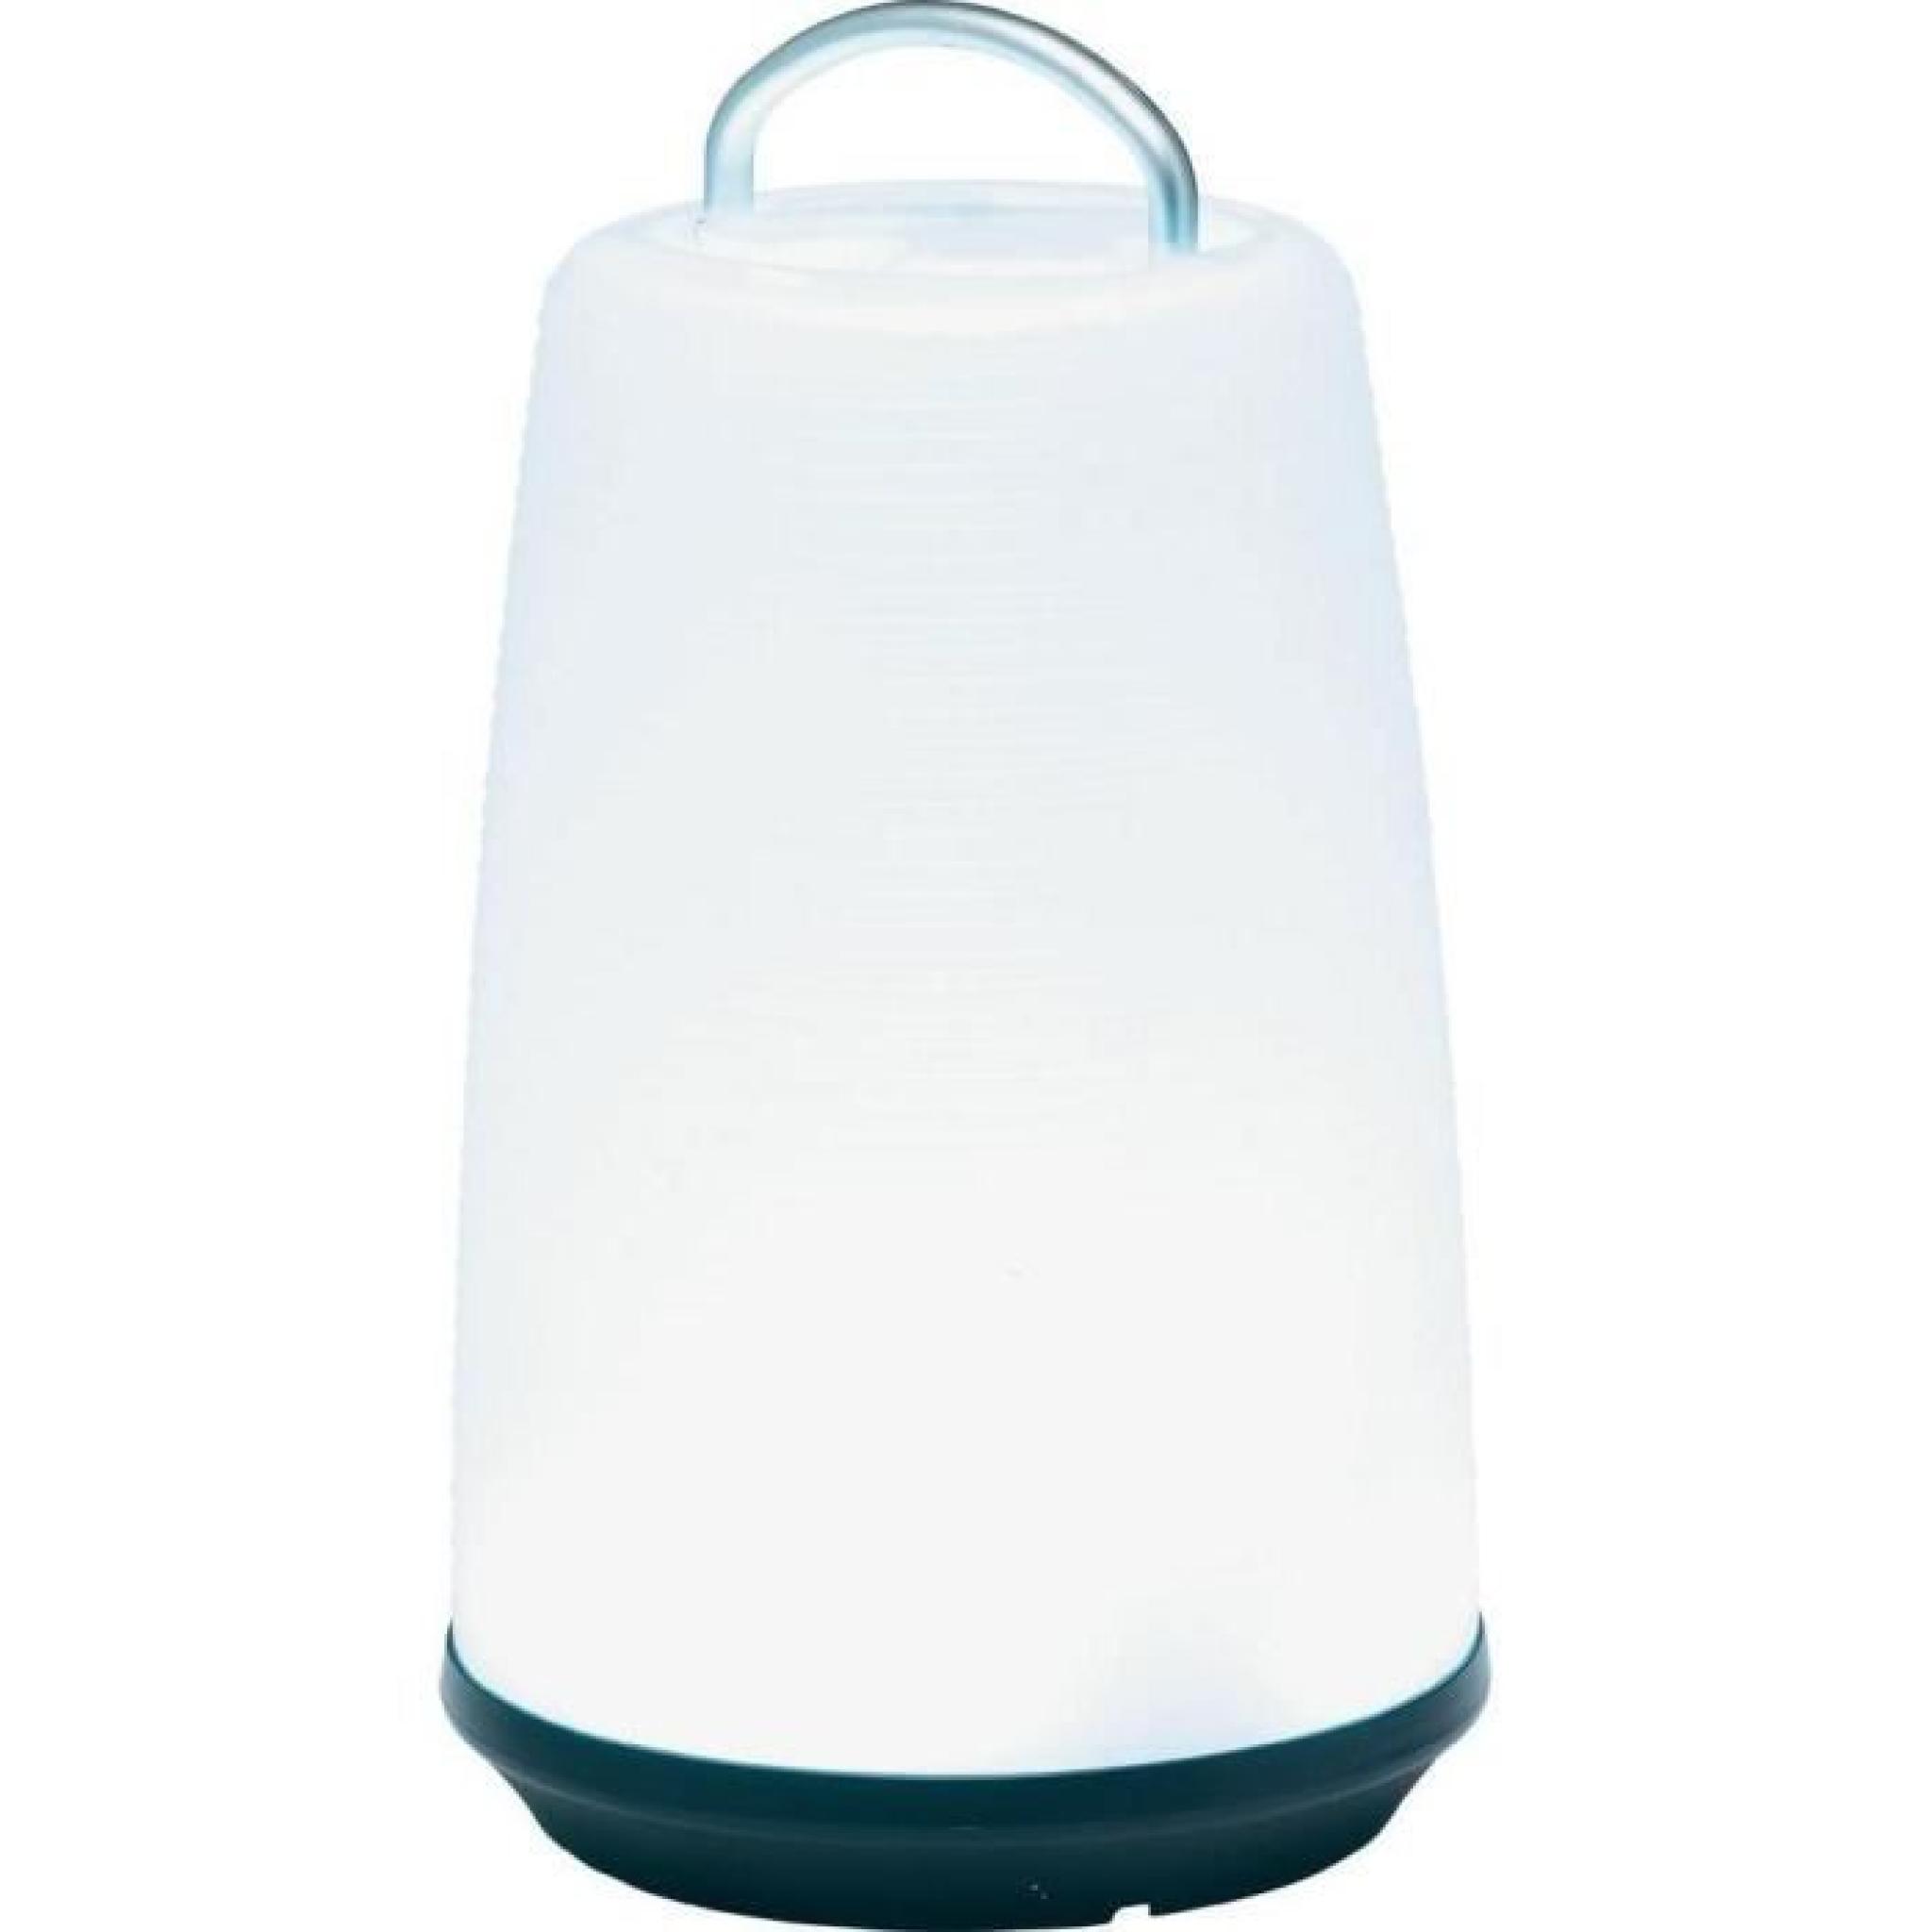 Lampe led - De table - 24 LED